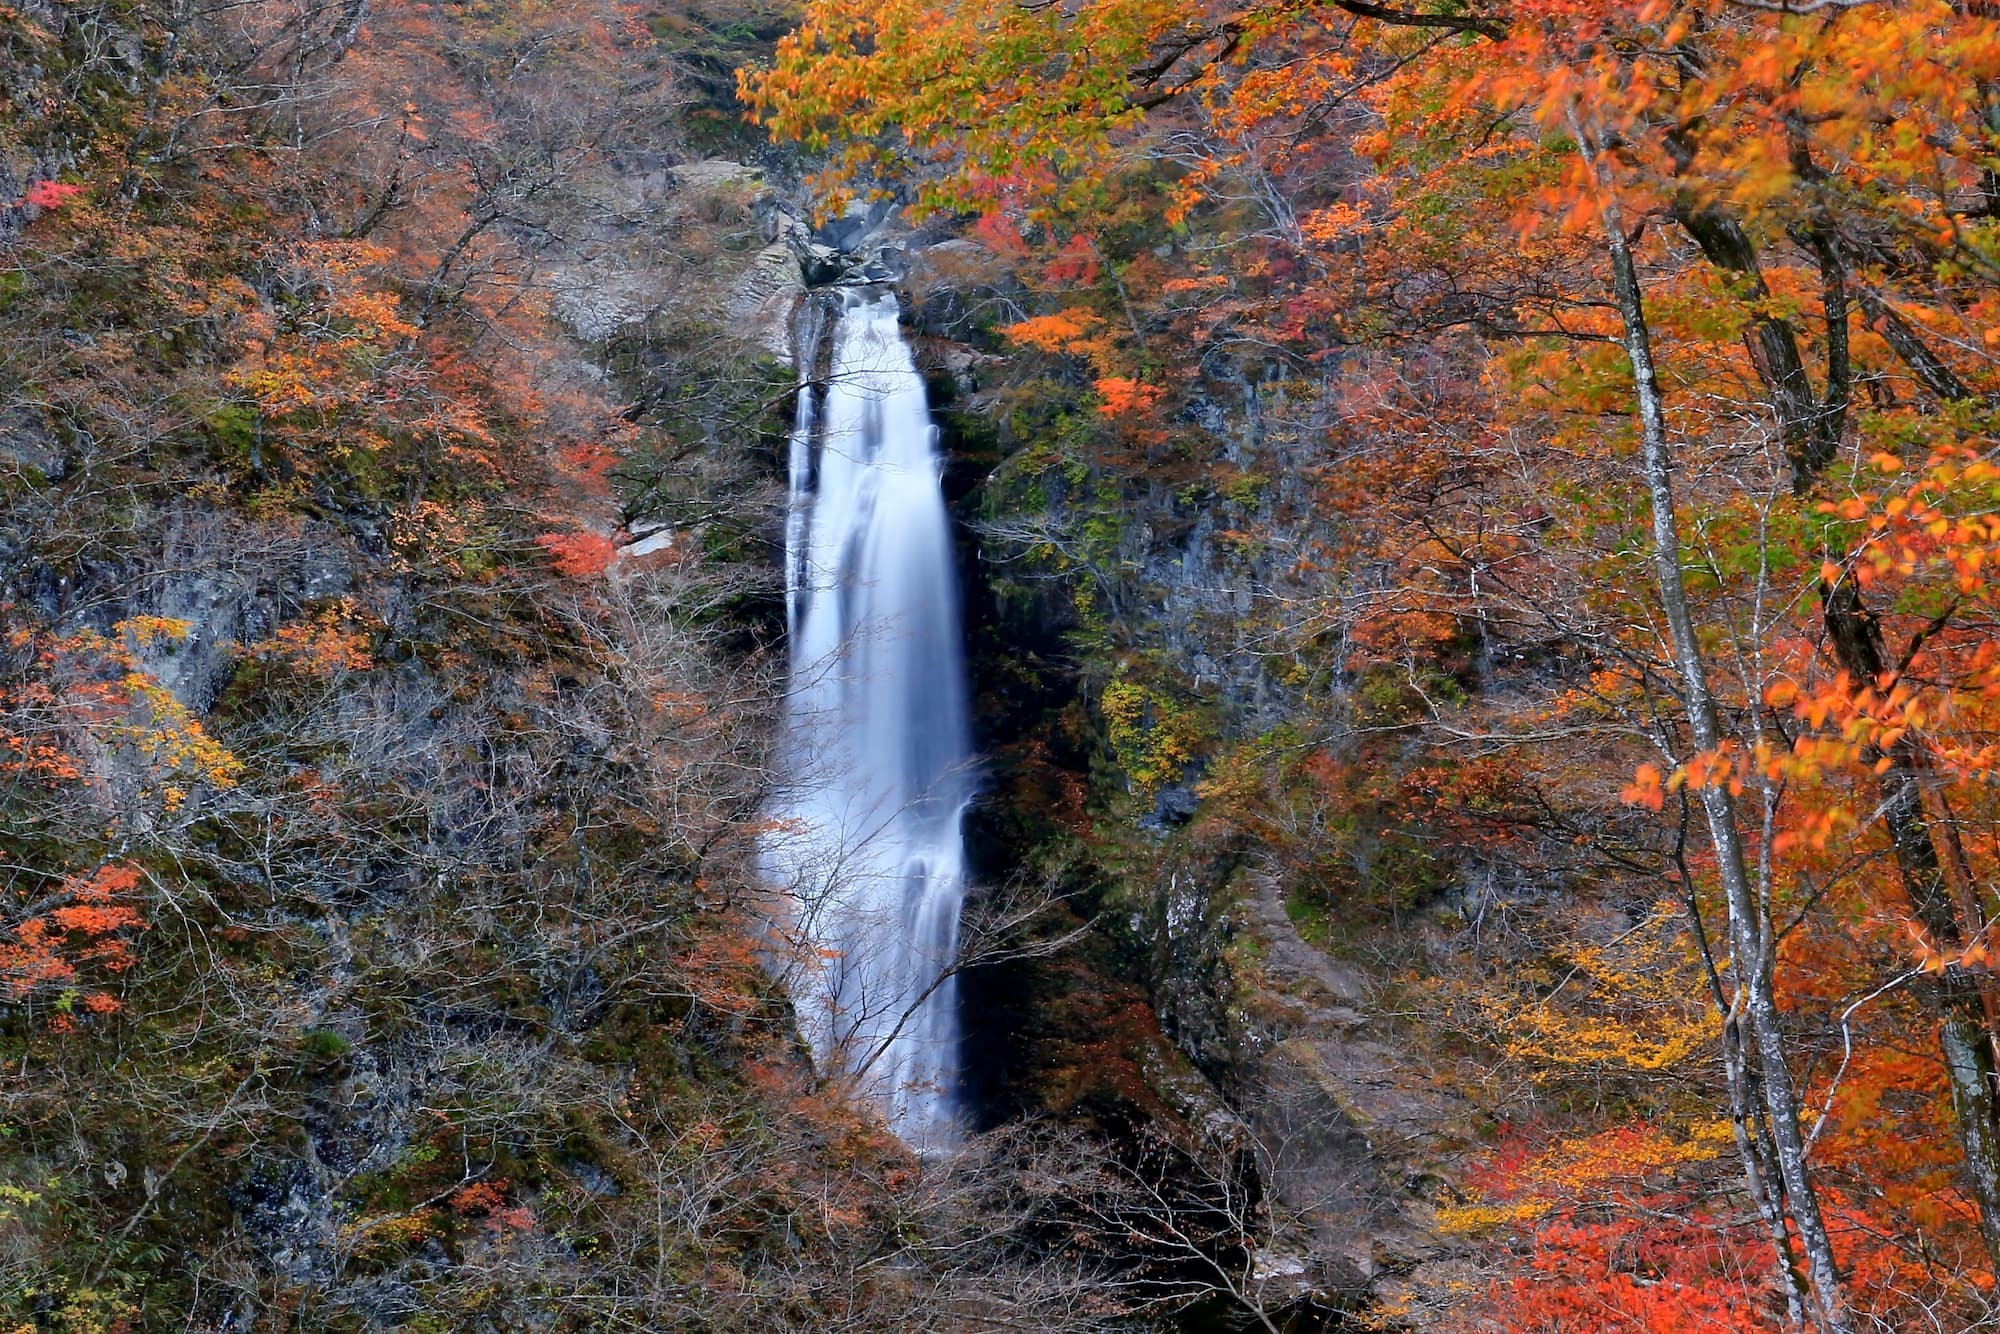 Nikko water falls